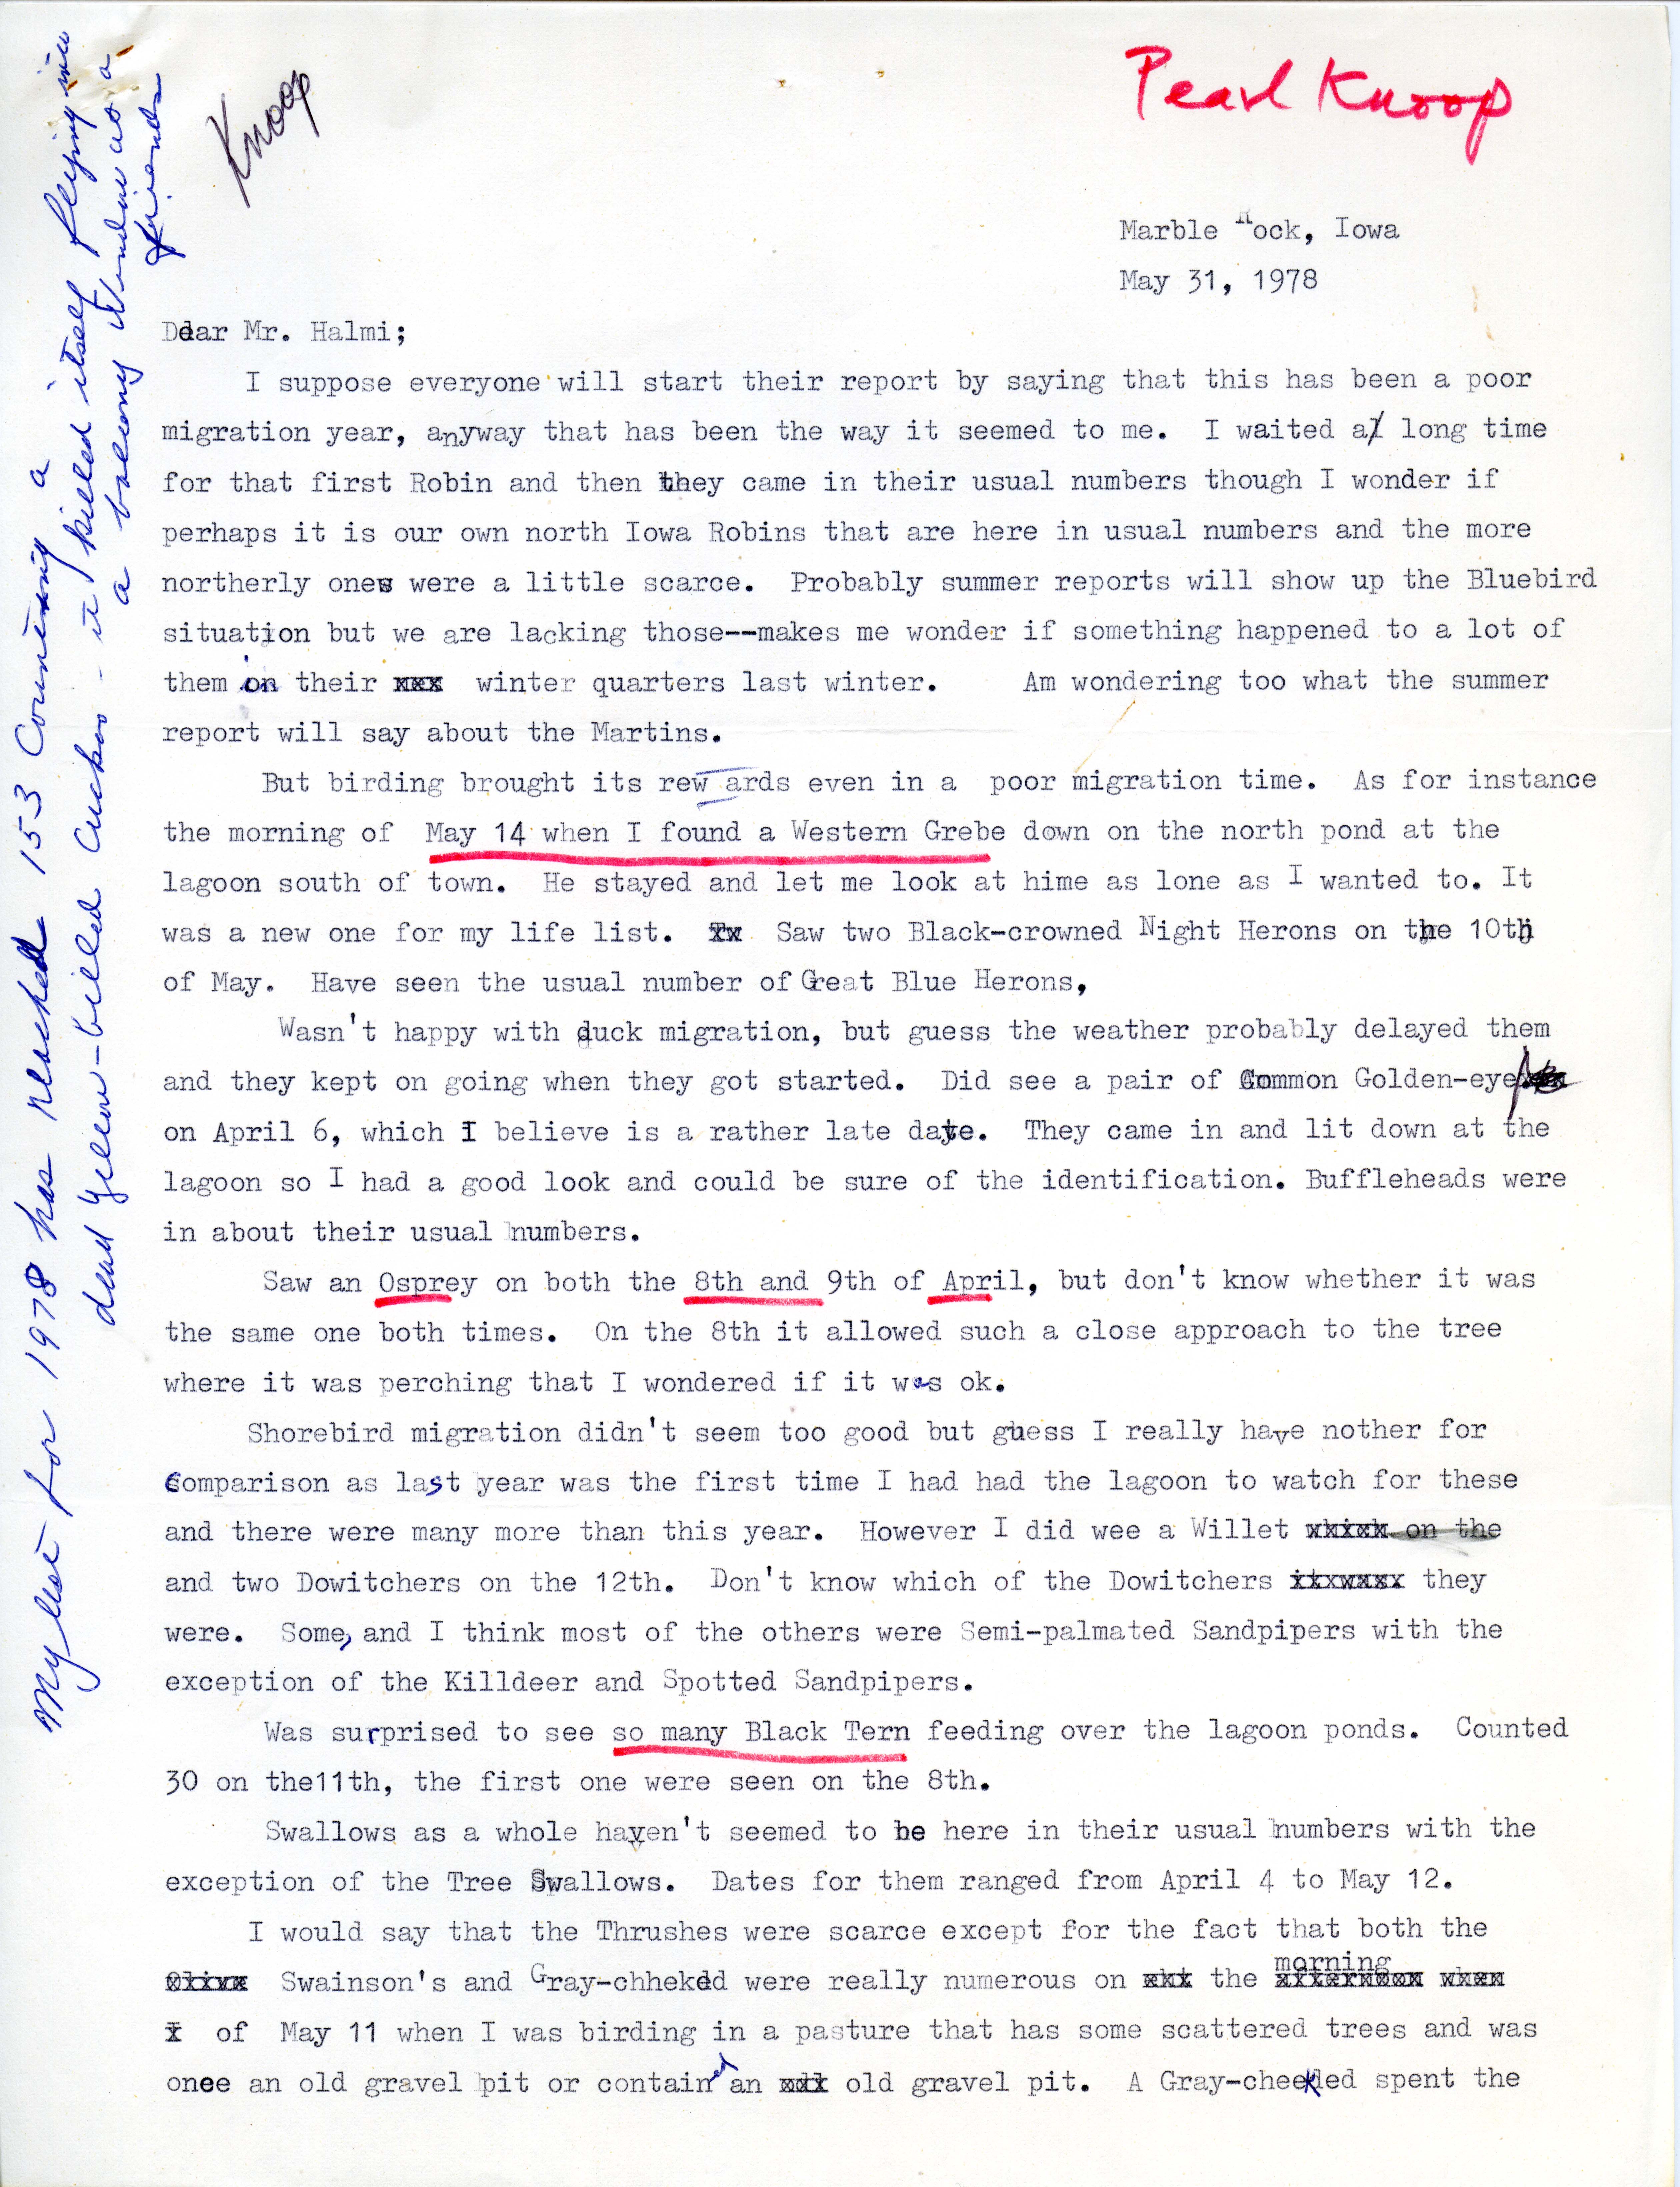 Pearl Knoop letter to Nicholas S. Halmi regarding bird sightings, May 31, 1978. 